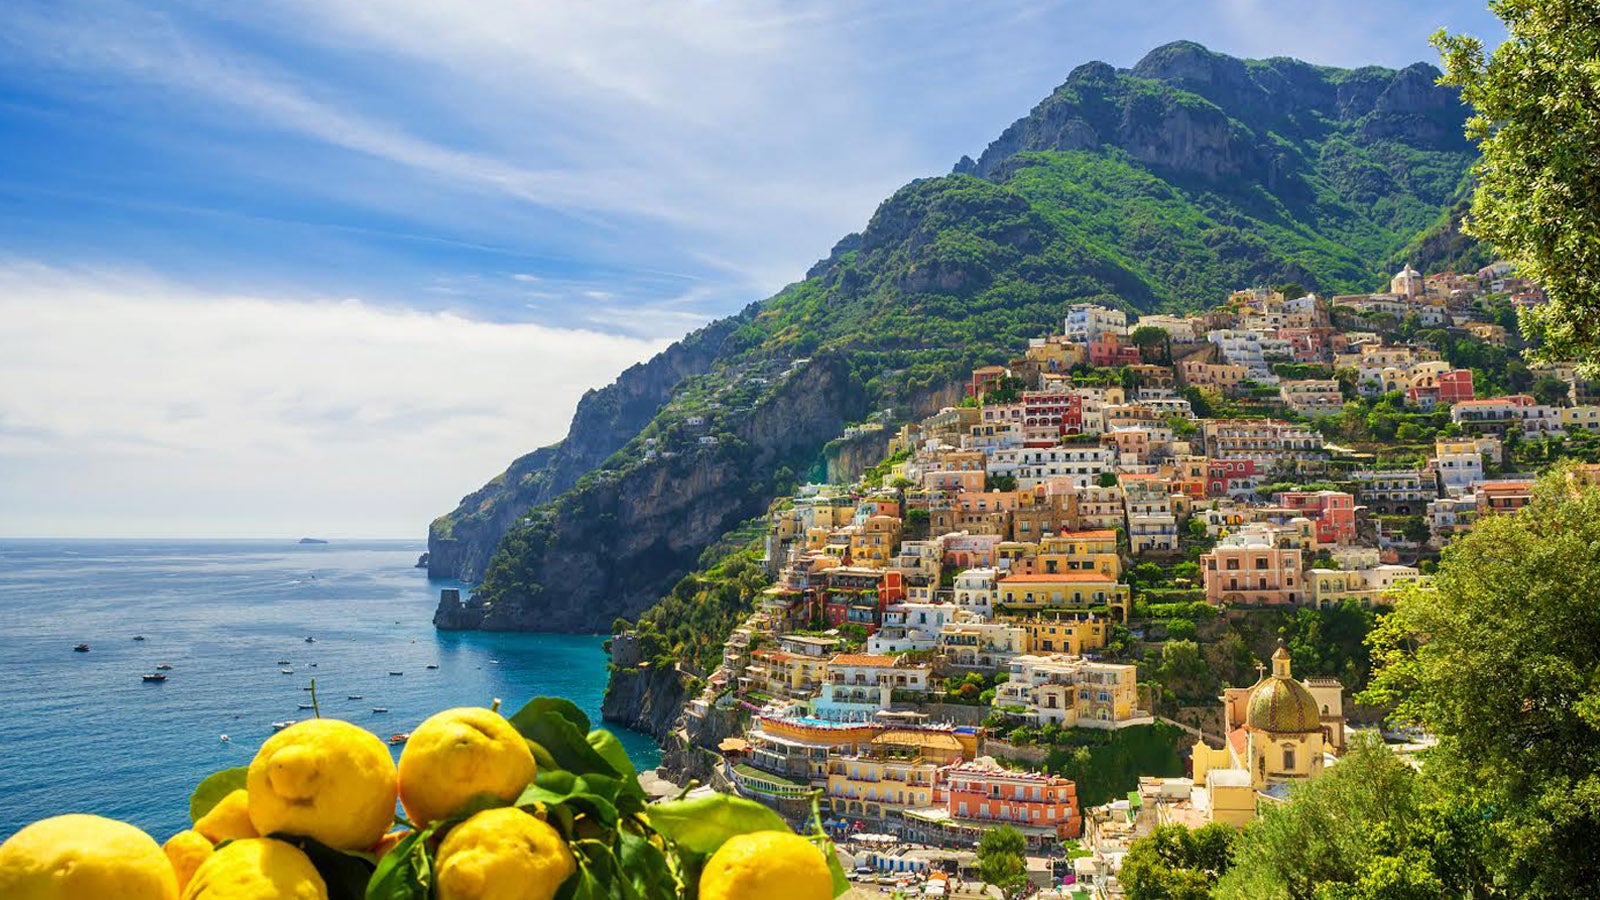 Amalfi Coast with lemon tree in forefront